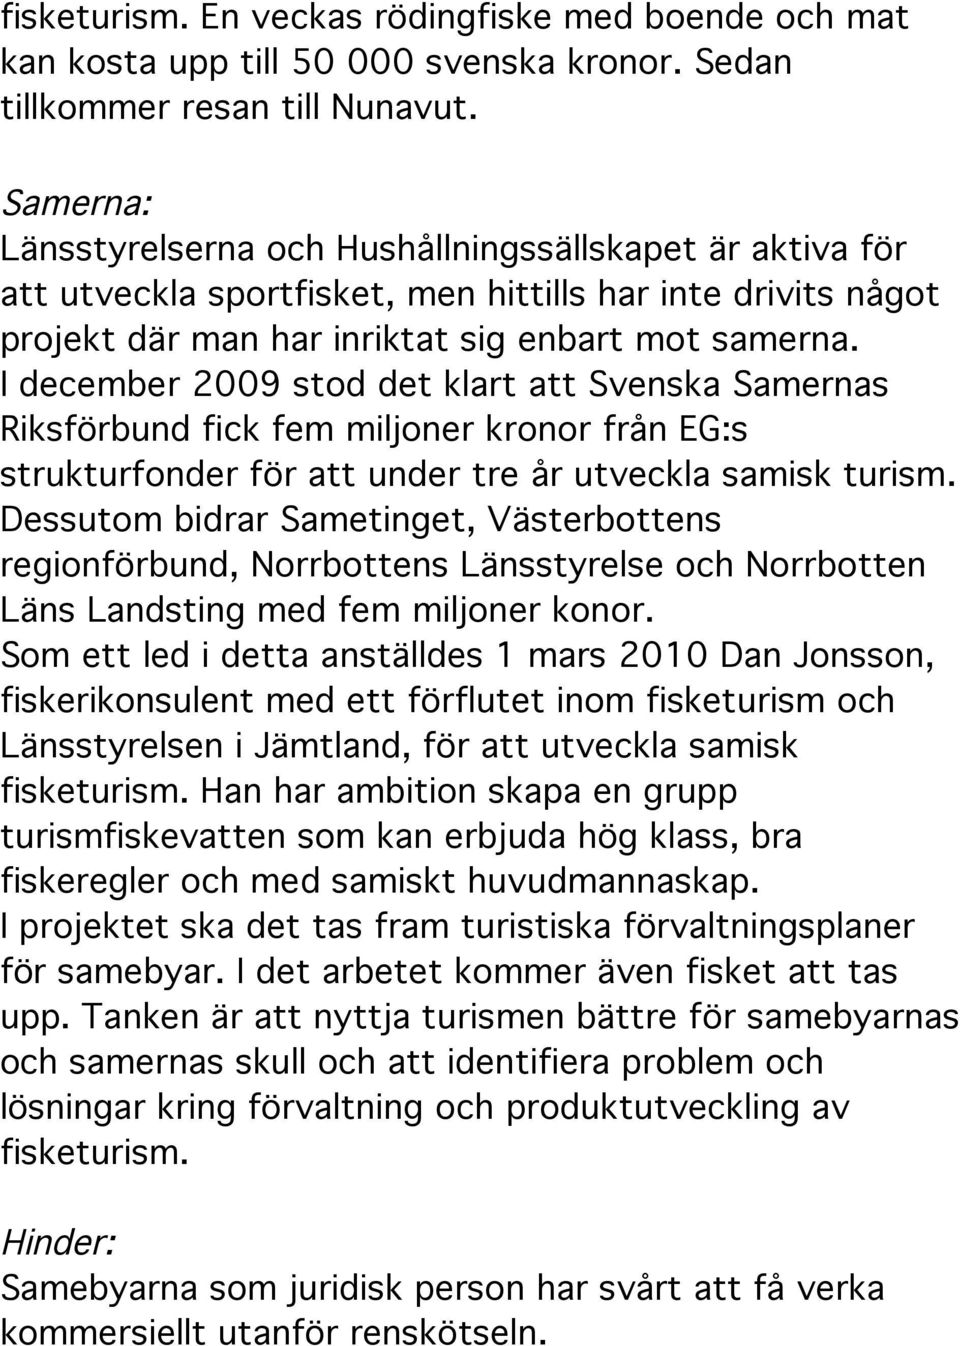 I december 2009 stod det klart att Svenska Samernas Riksförbund fick fem miljoner kronor från EG:s strukturfonder för att under tre år utveckla samisk turism.